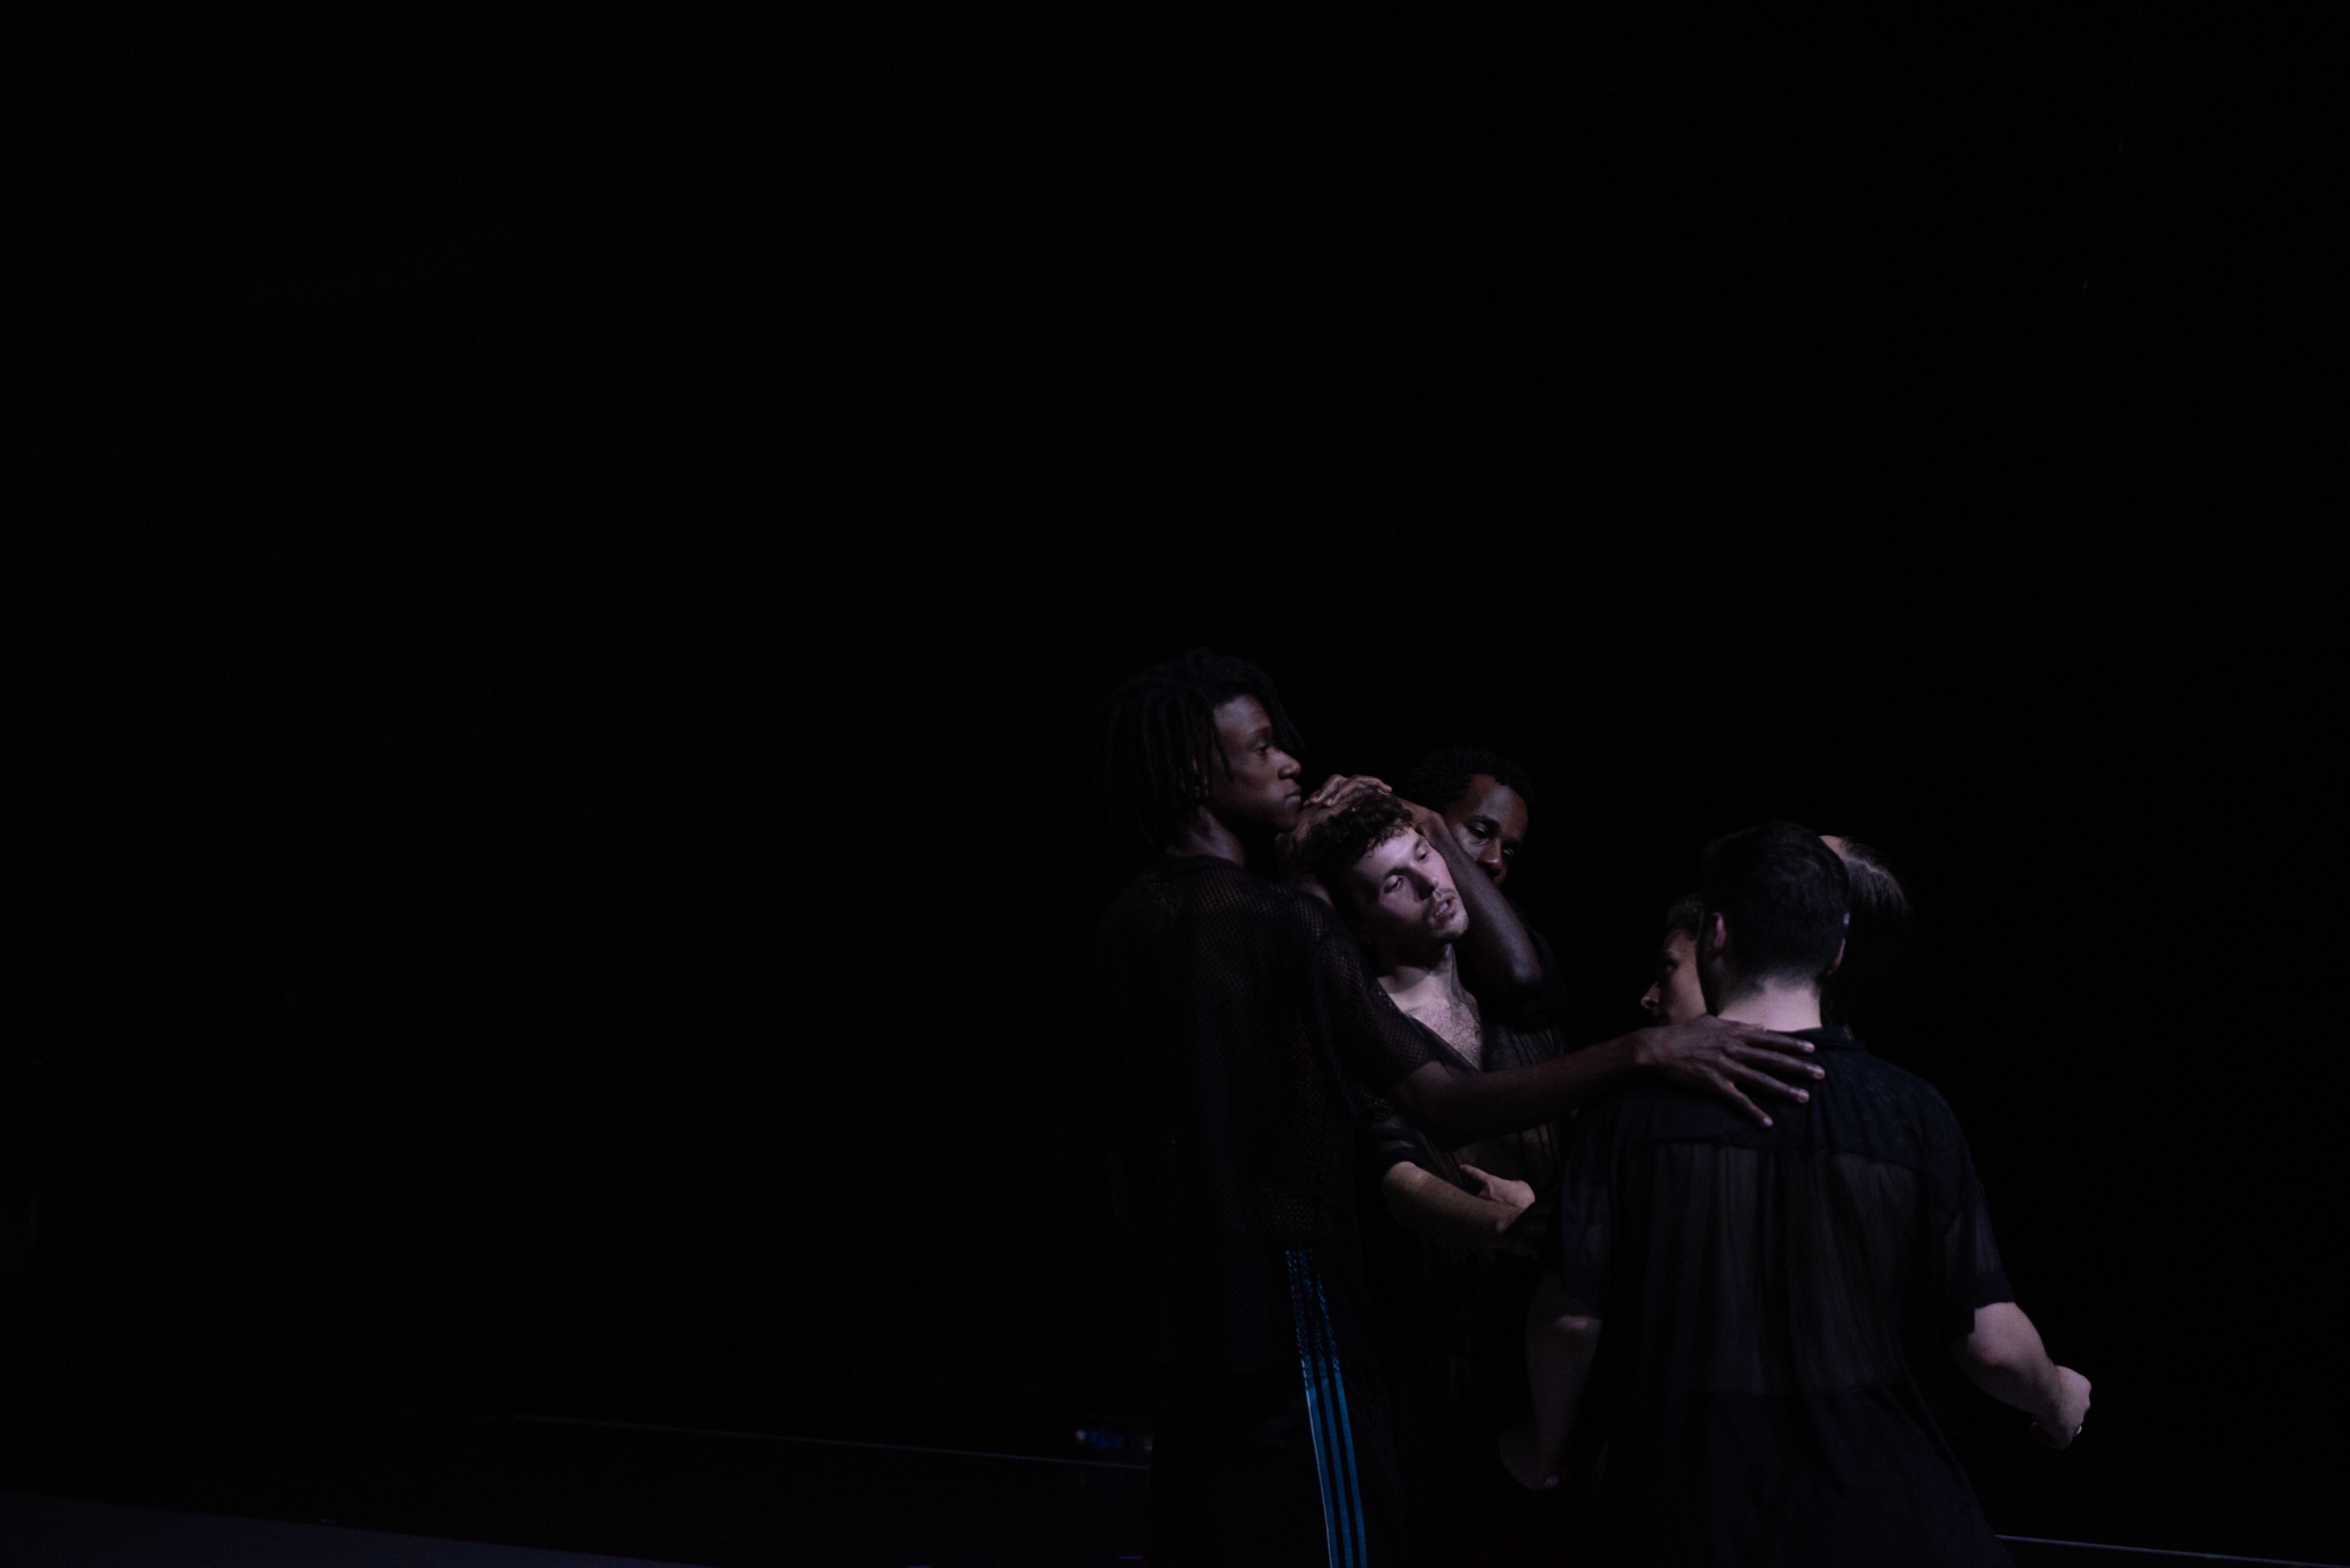 Danseurs en groupe sur un scène sombre